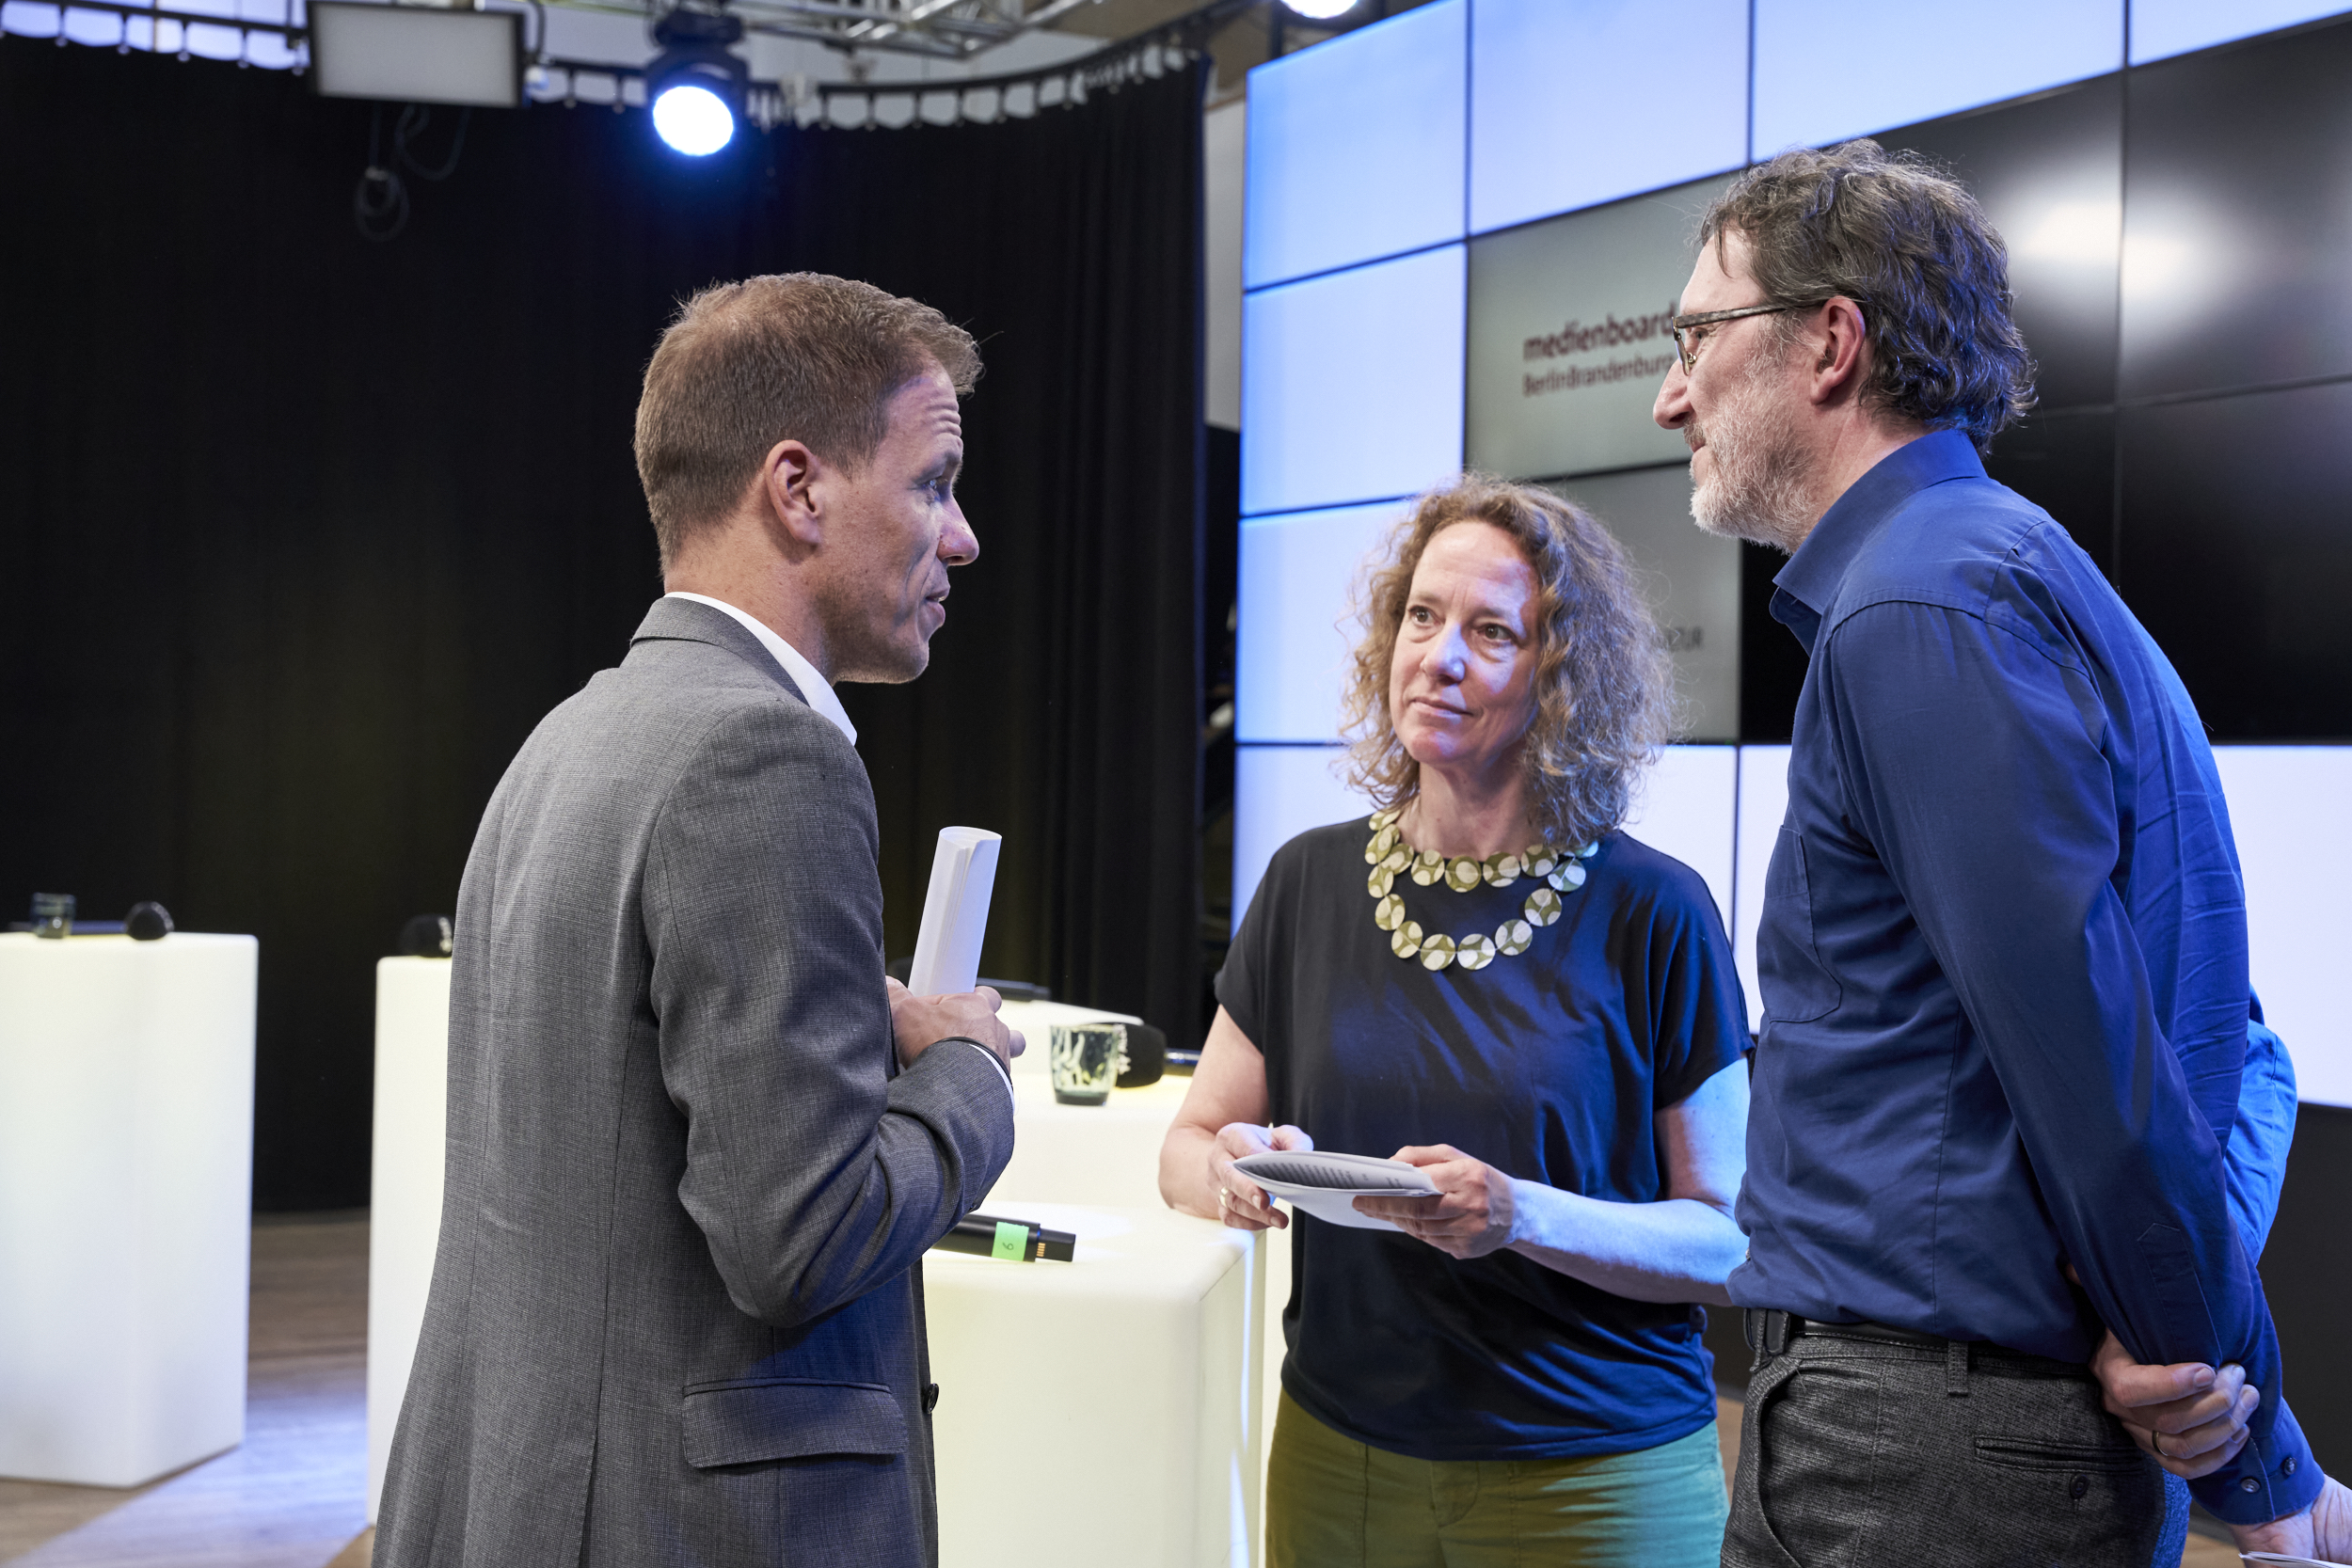 André Necke, Prof. Dr. Angela Tillmann und Michael Gurt (von links nach rechts) tauschen sich zwischen den Programmpunkten aus.